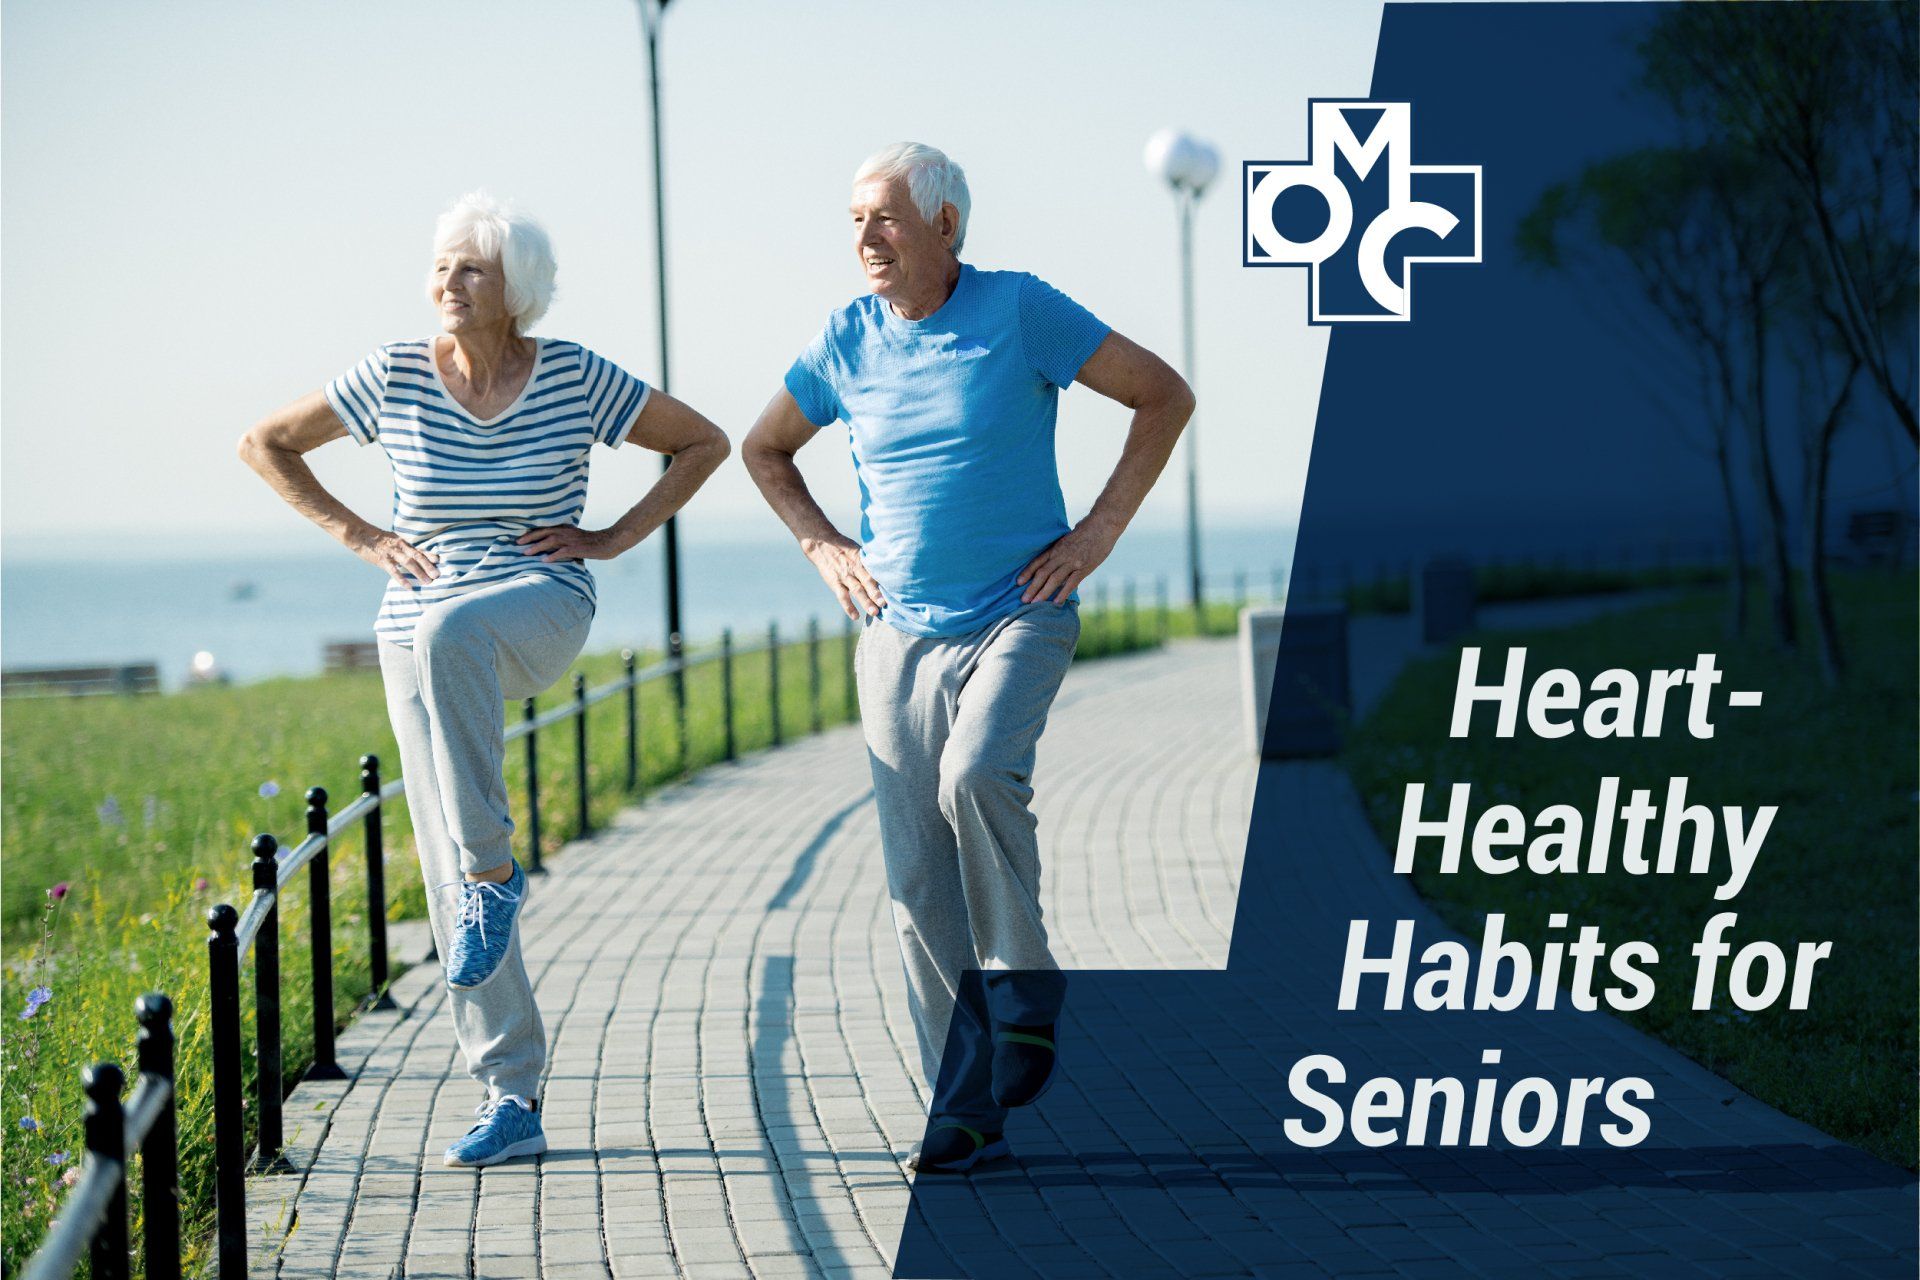 Heart-Healthy Habits for Seniors